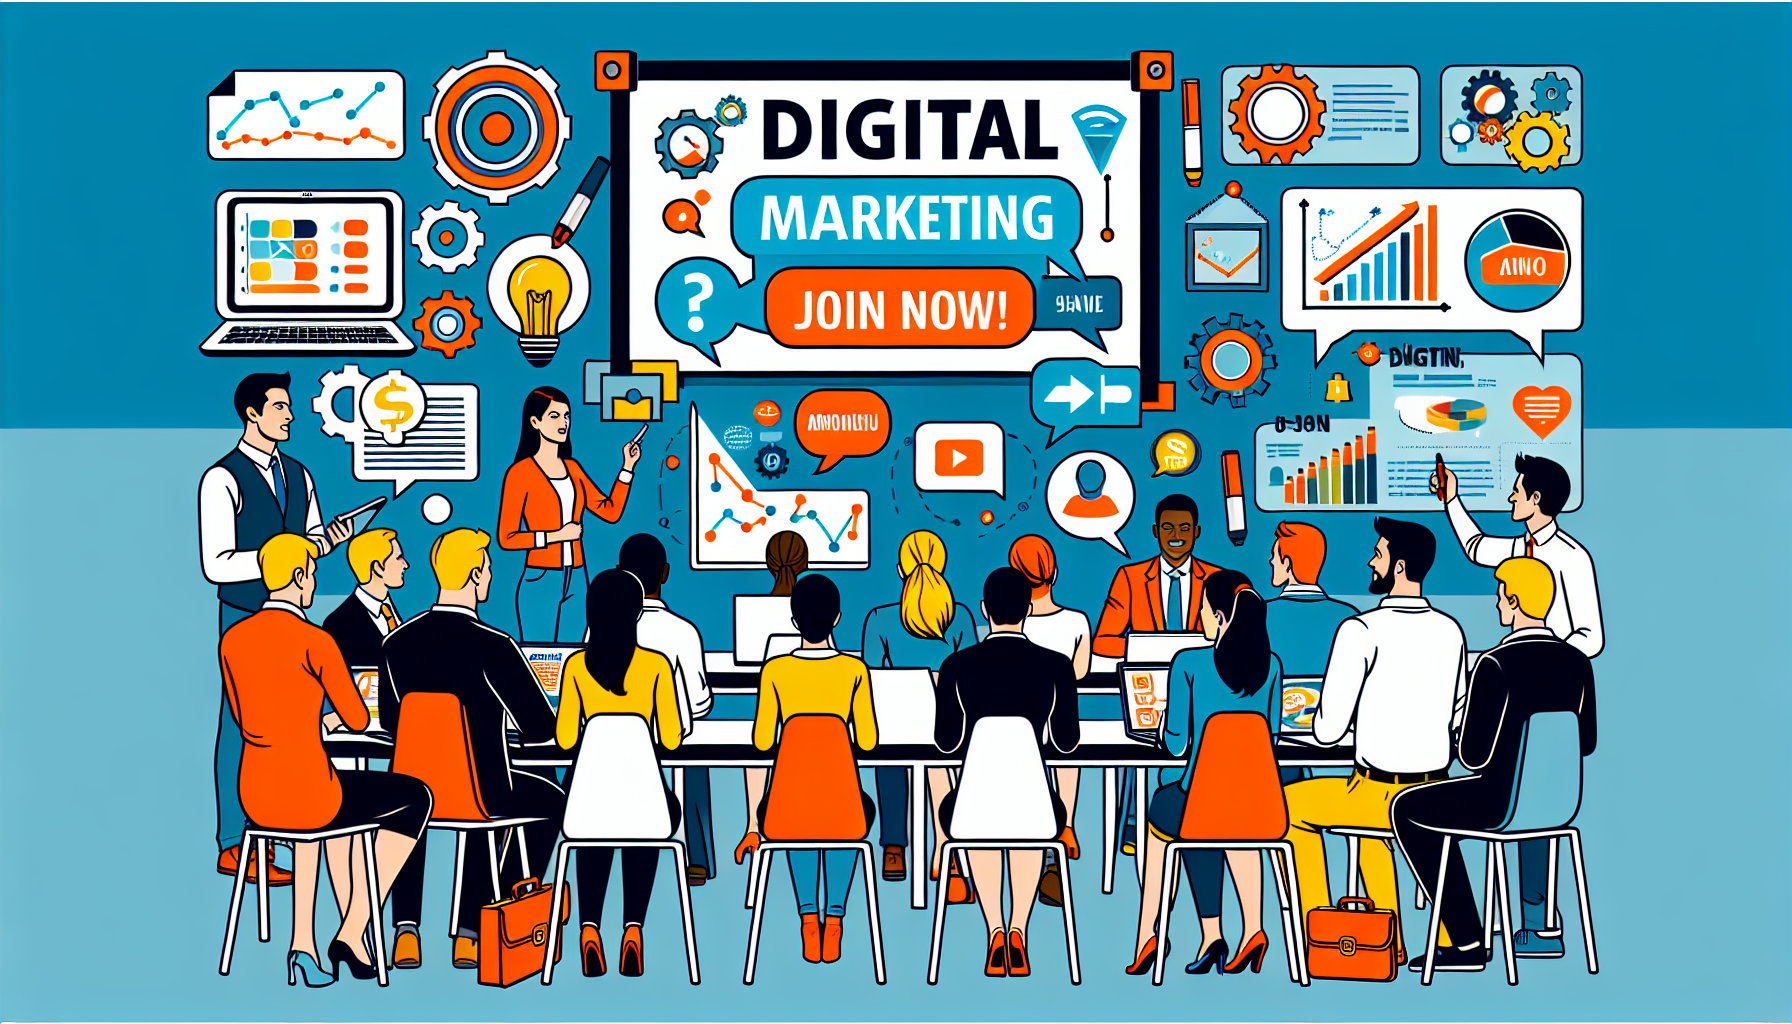 découvrez une formation en marketing digital pour maîtriser les outils et stratégies du marketing en ligne. boostez vos compétences en marketing digital avec notre programme complet.